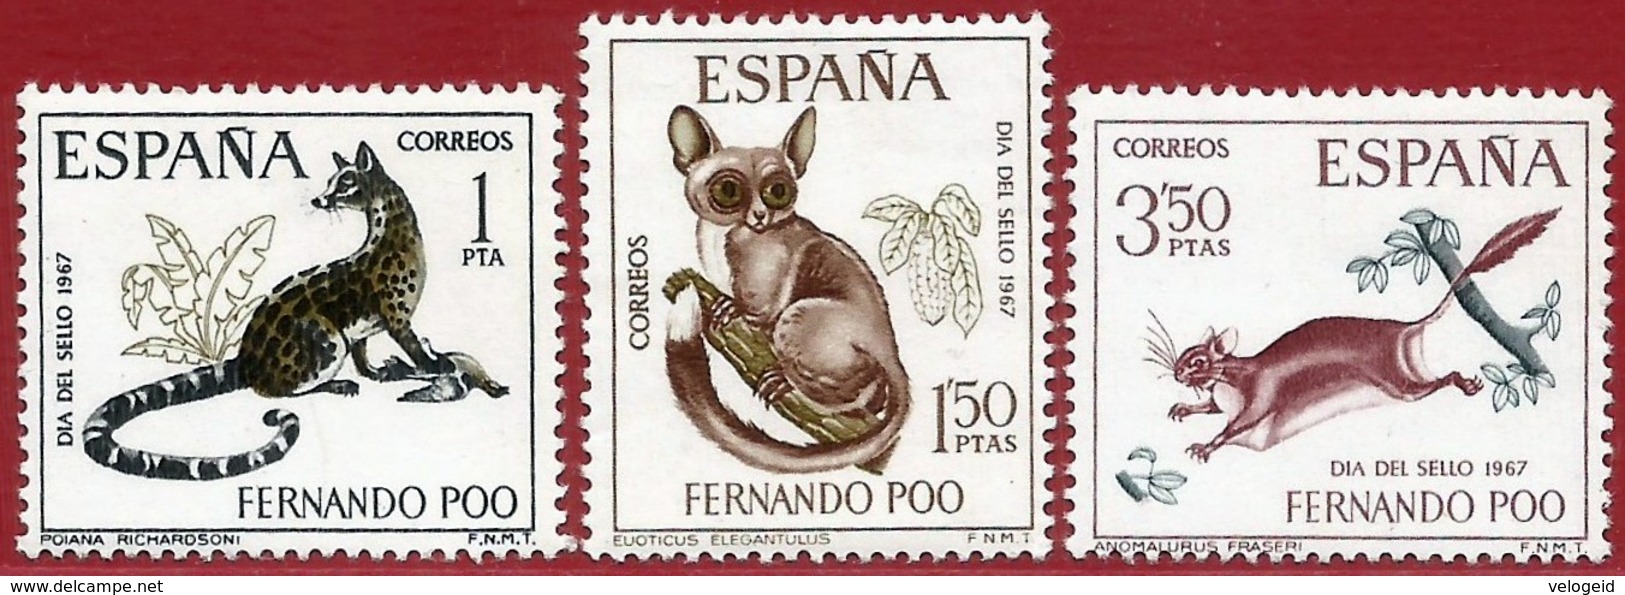 Fernando Poo (España). 1967. Dia Del Sello. Stamp Day - Fernando Po